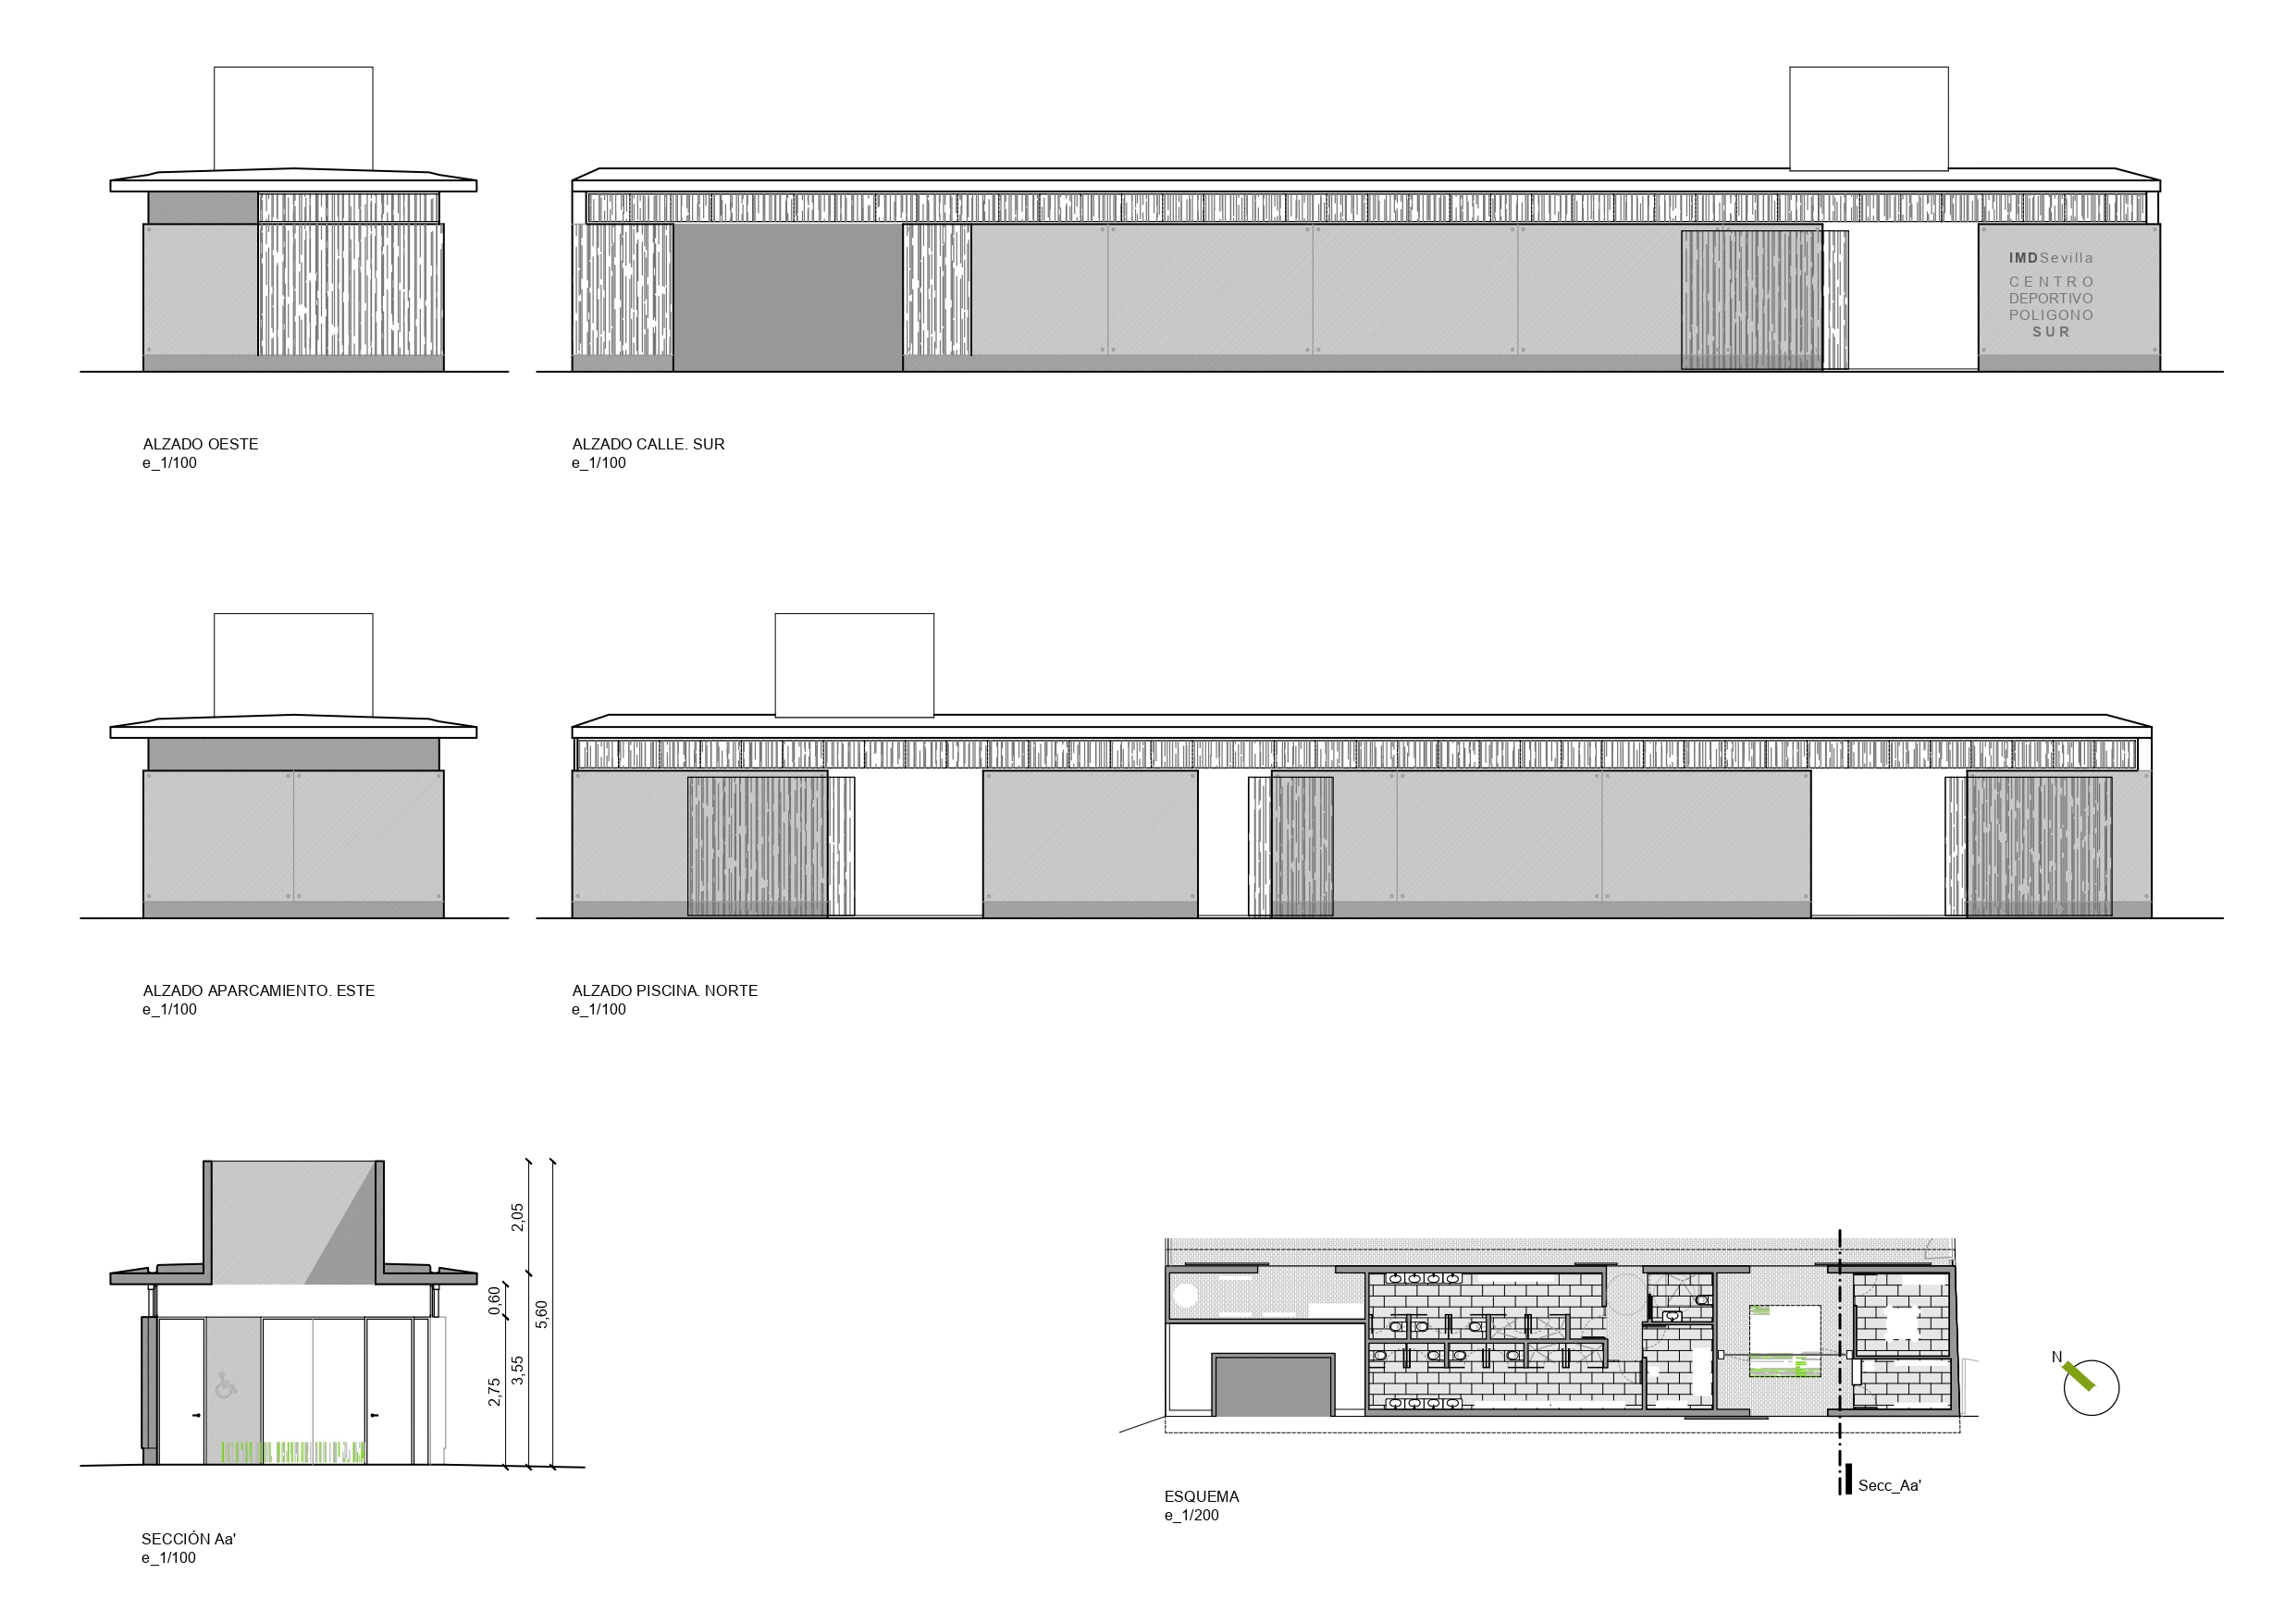 perez-lombard-arquitectos-www-plarquitectos-piscina-poligono-sur-secciones